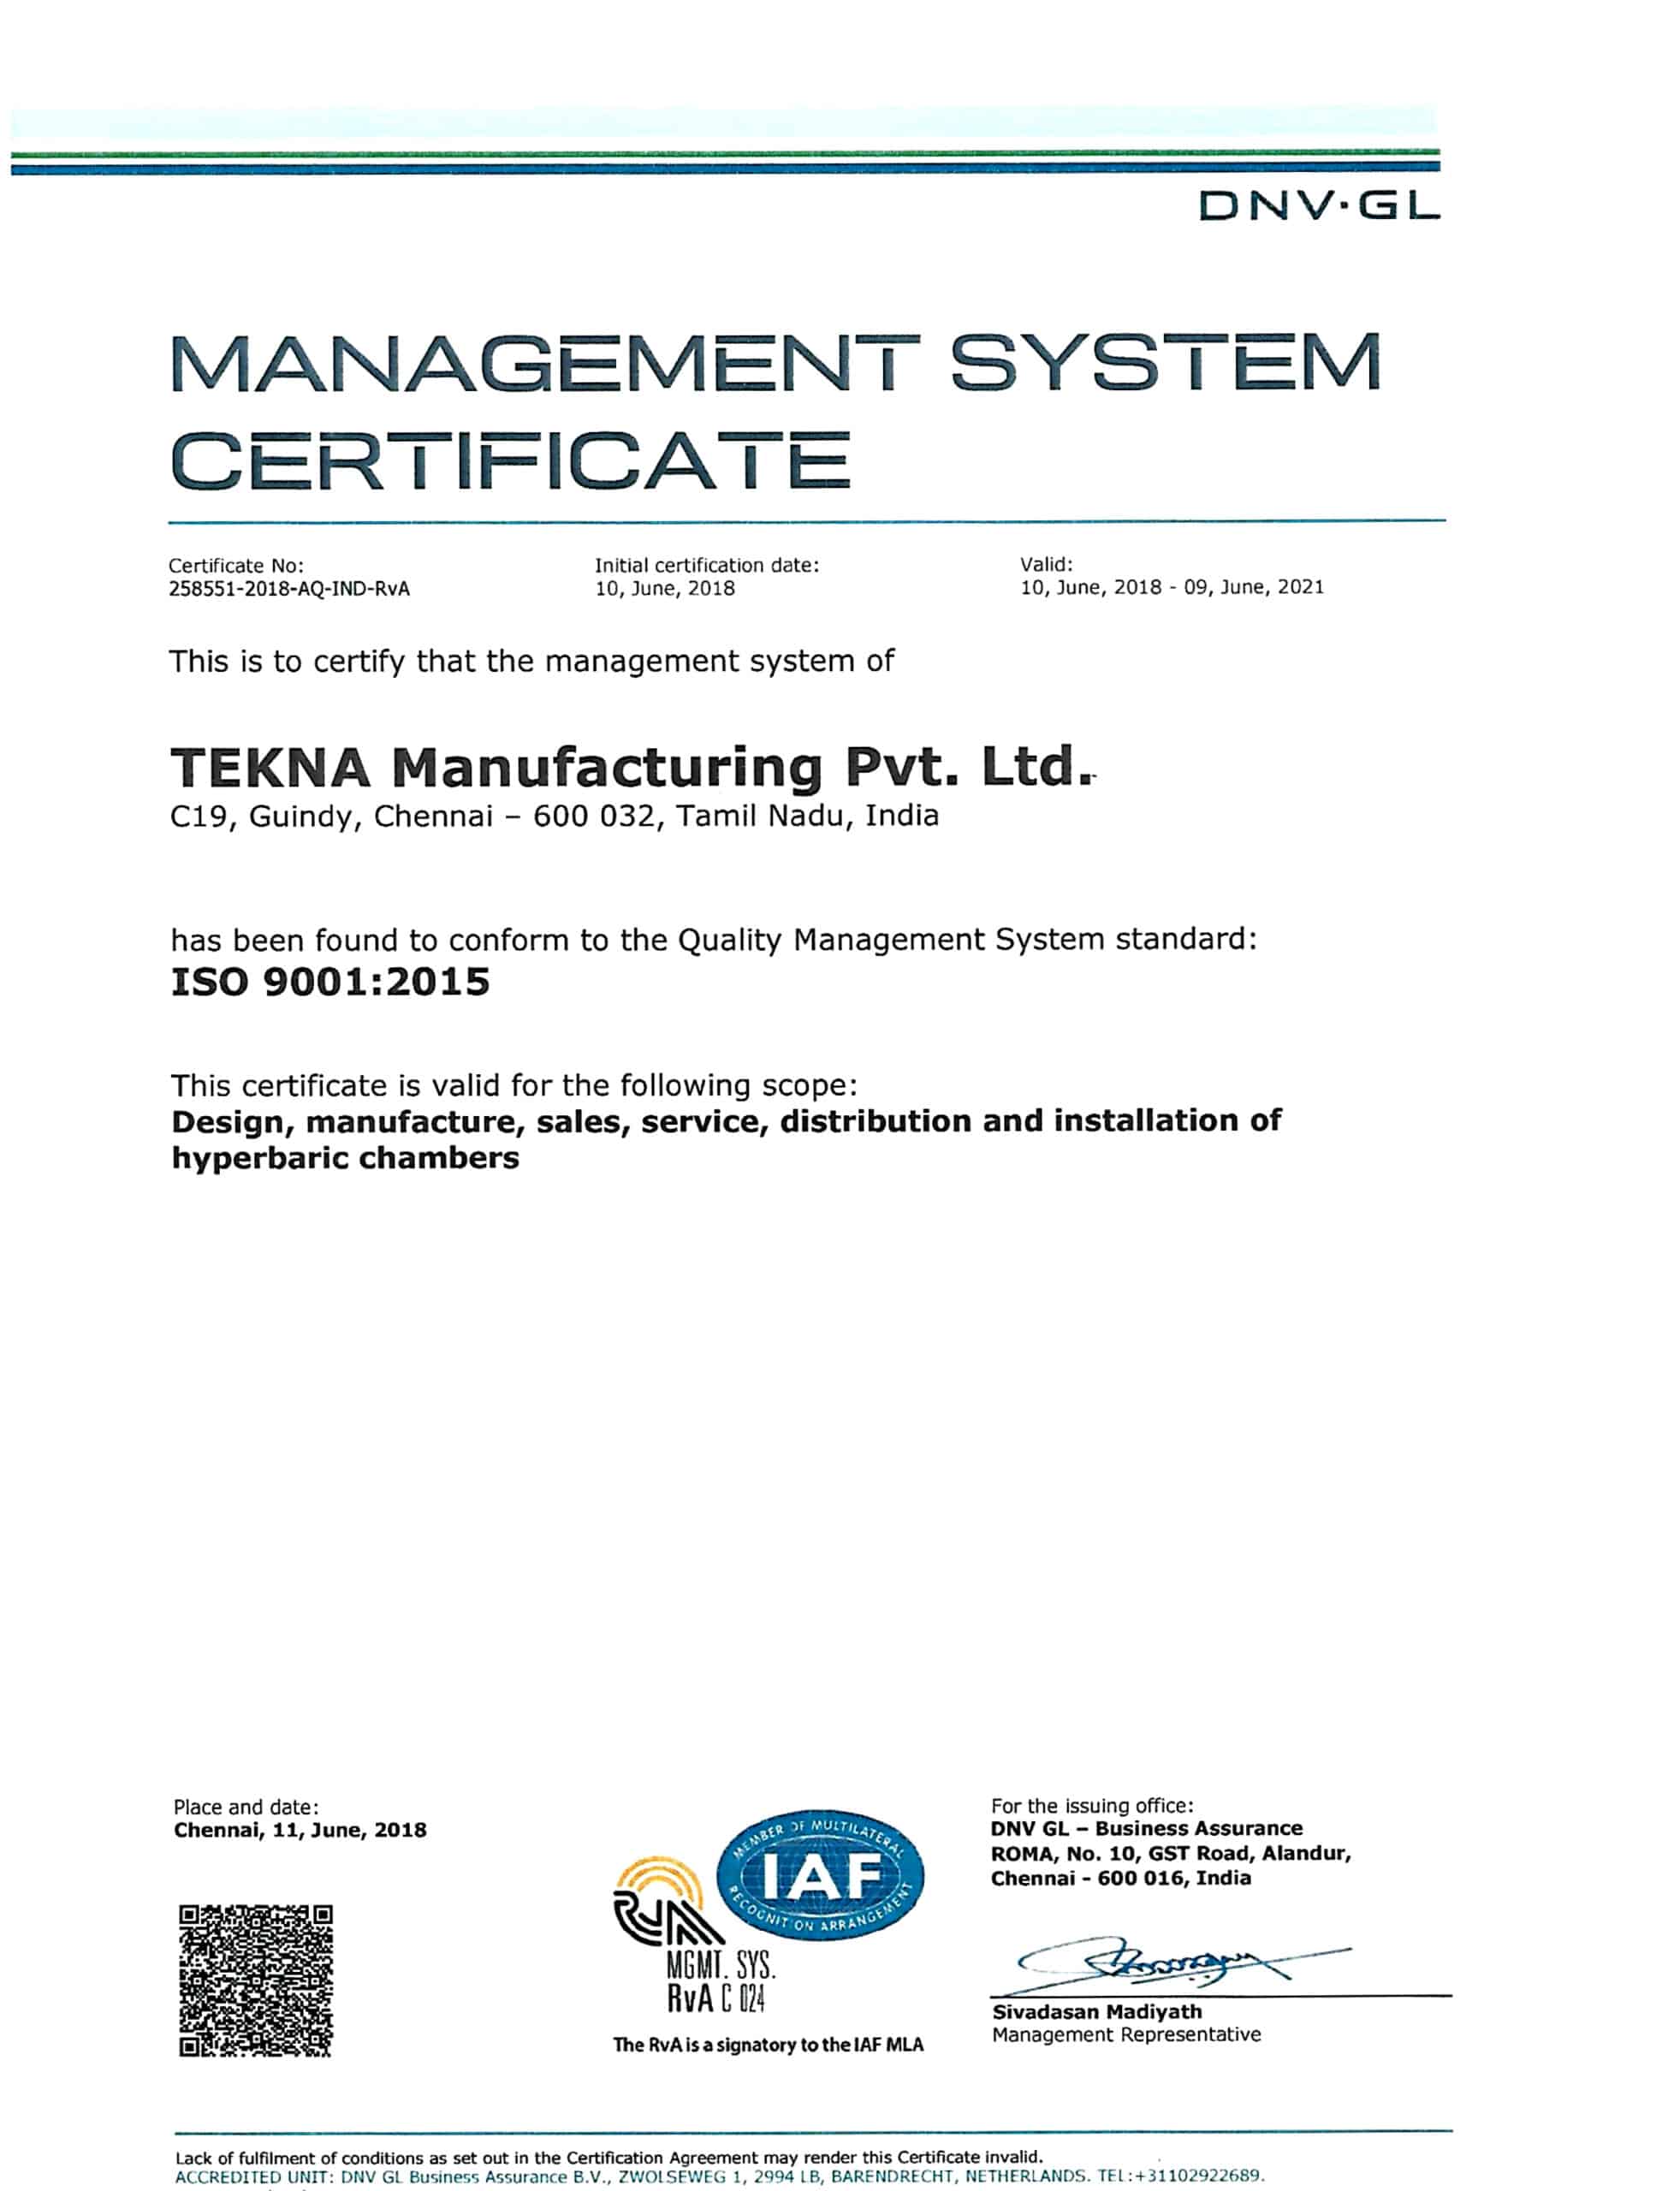 TEKNA İSTEHSALI ISO 9001-2015